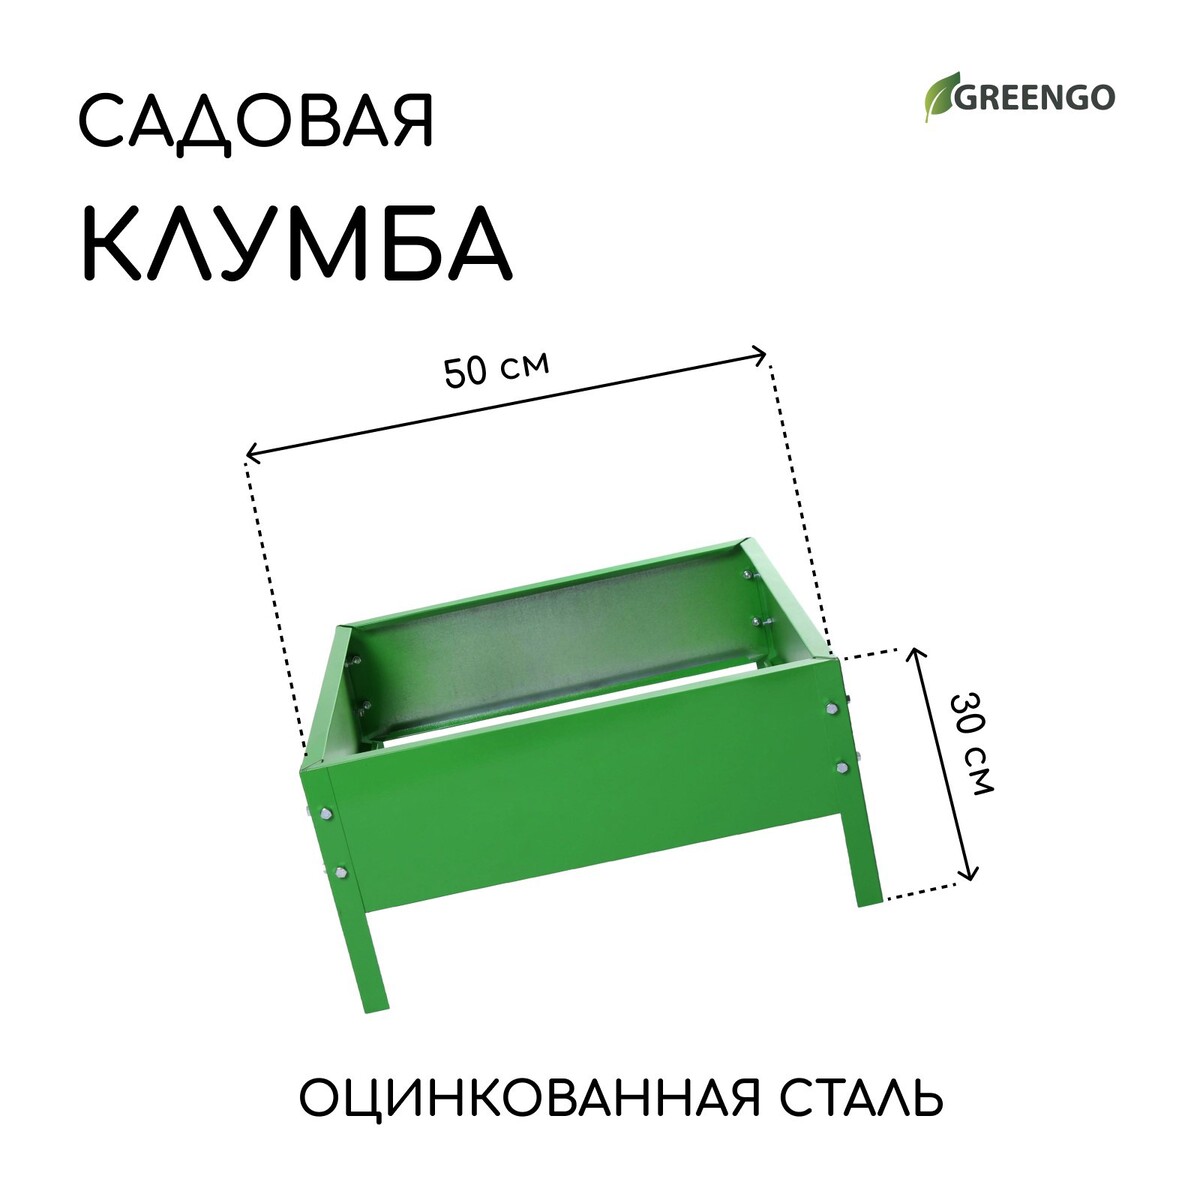 Клумба оцинкованная, 50 × 50 × 15 см, ярко-зеленая, greengo клумба оцинкованная d 60 см h 15 см ярко зеленая greengo